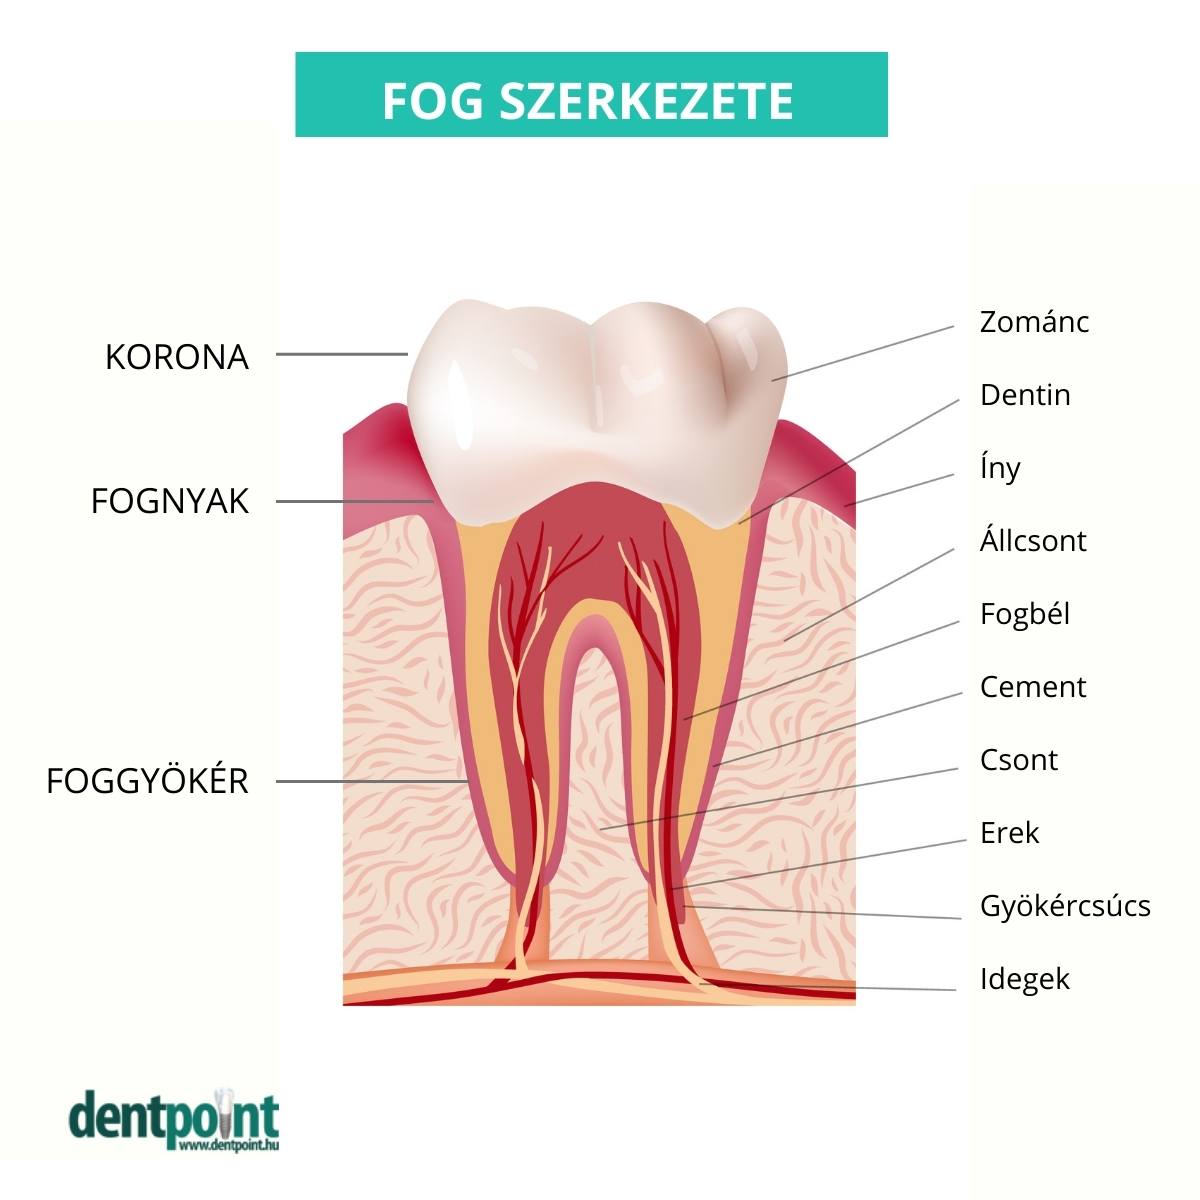 A fogzománc a fog külső részén található